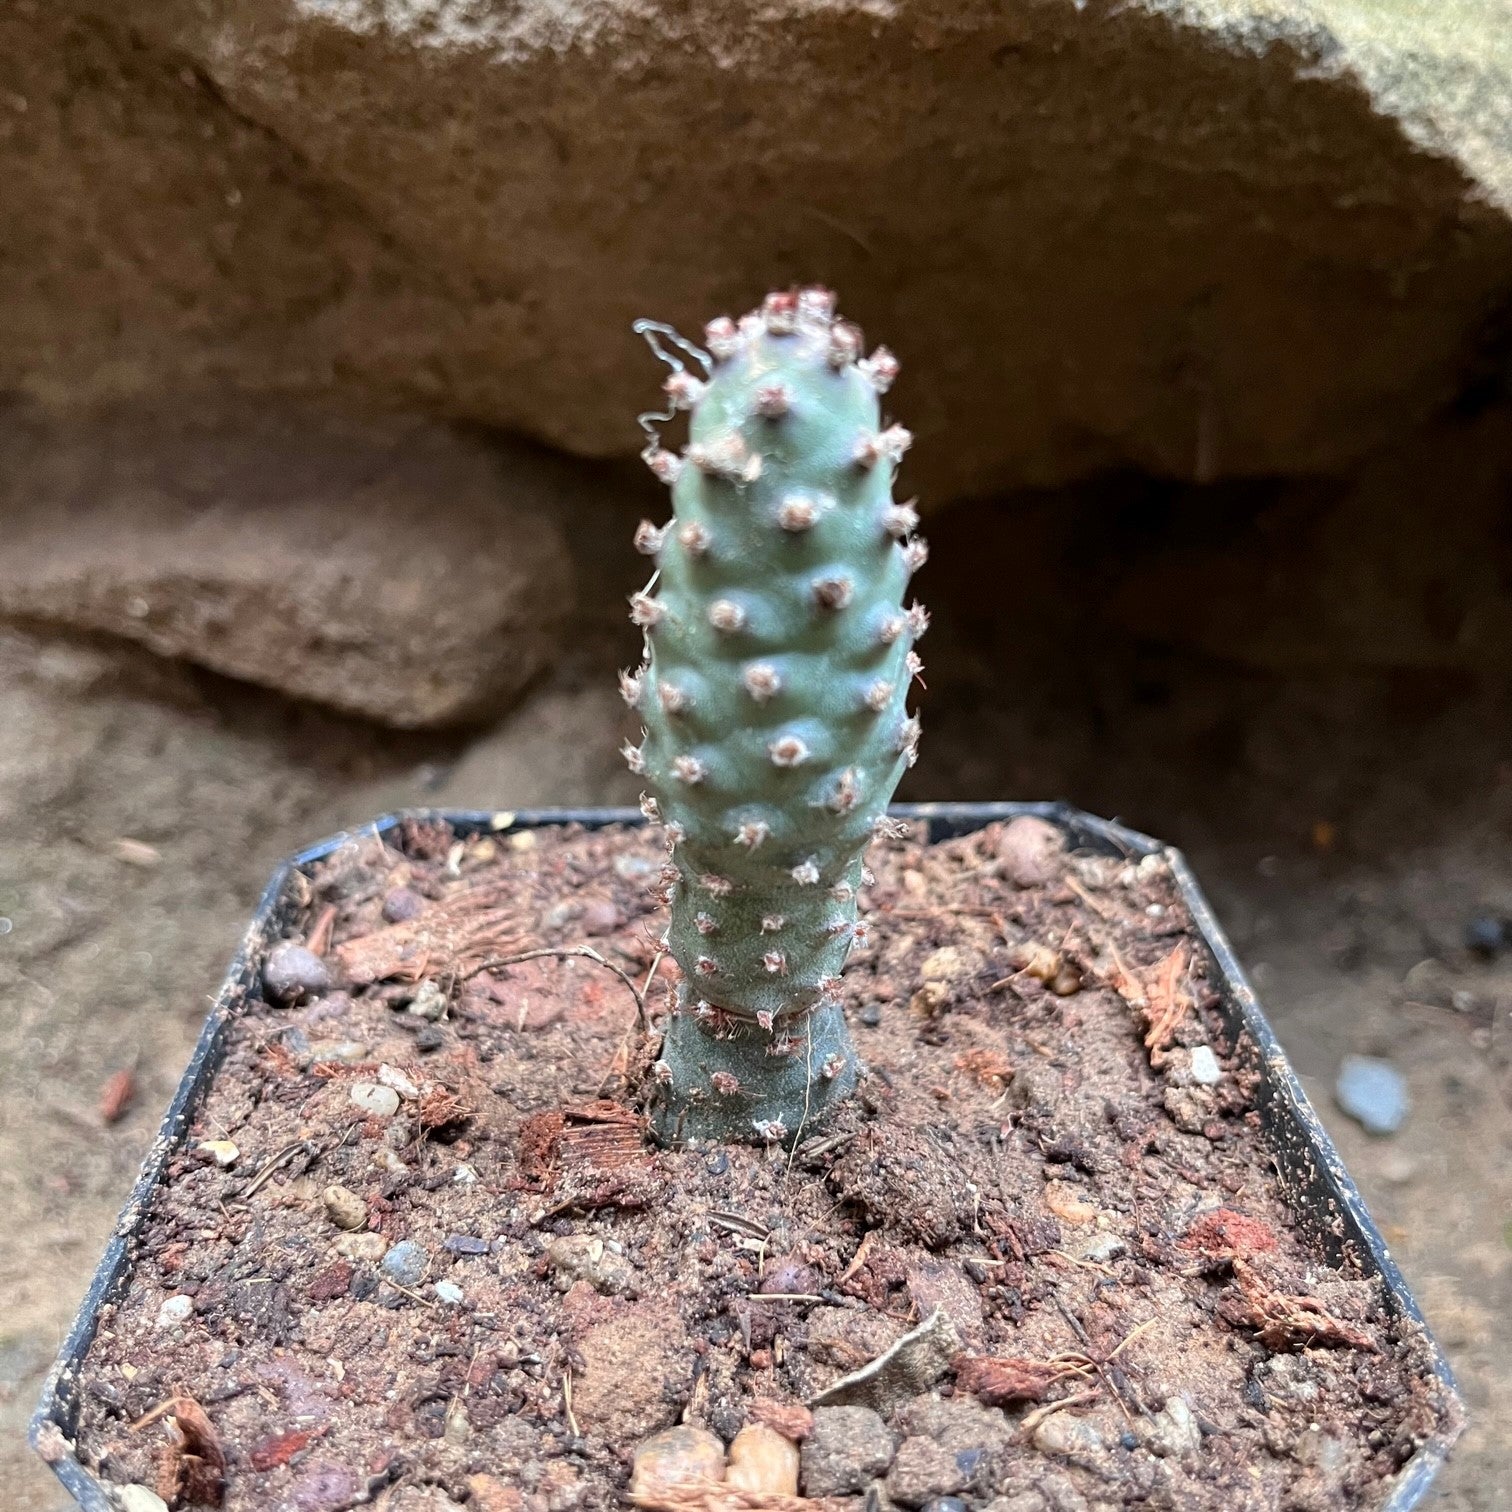 Tephrocactus Articulatus var. Inermis Cactus Plant - myBageecha